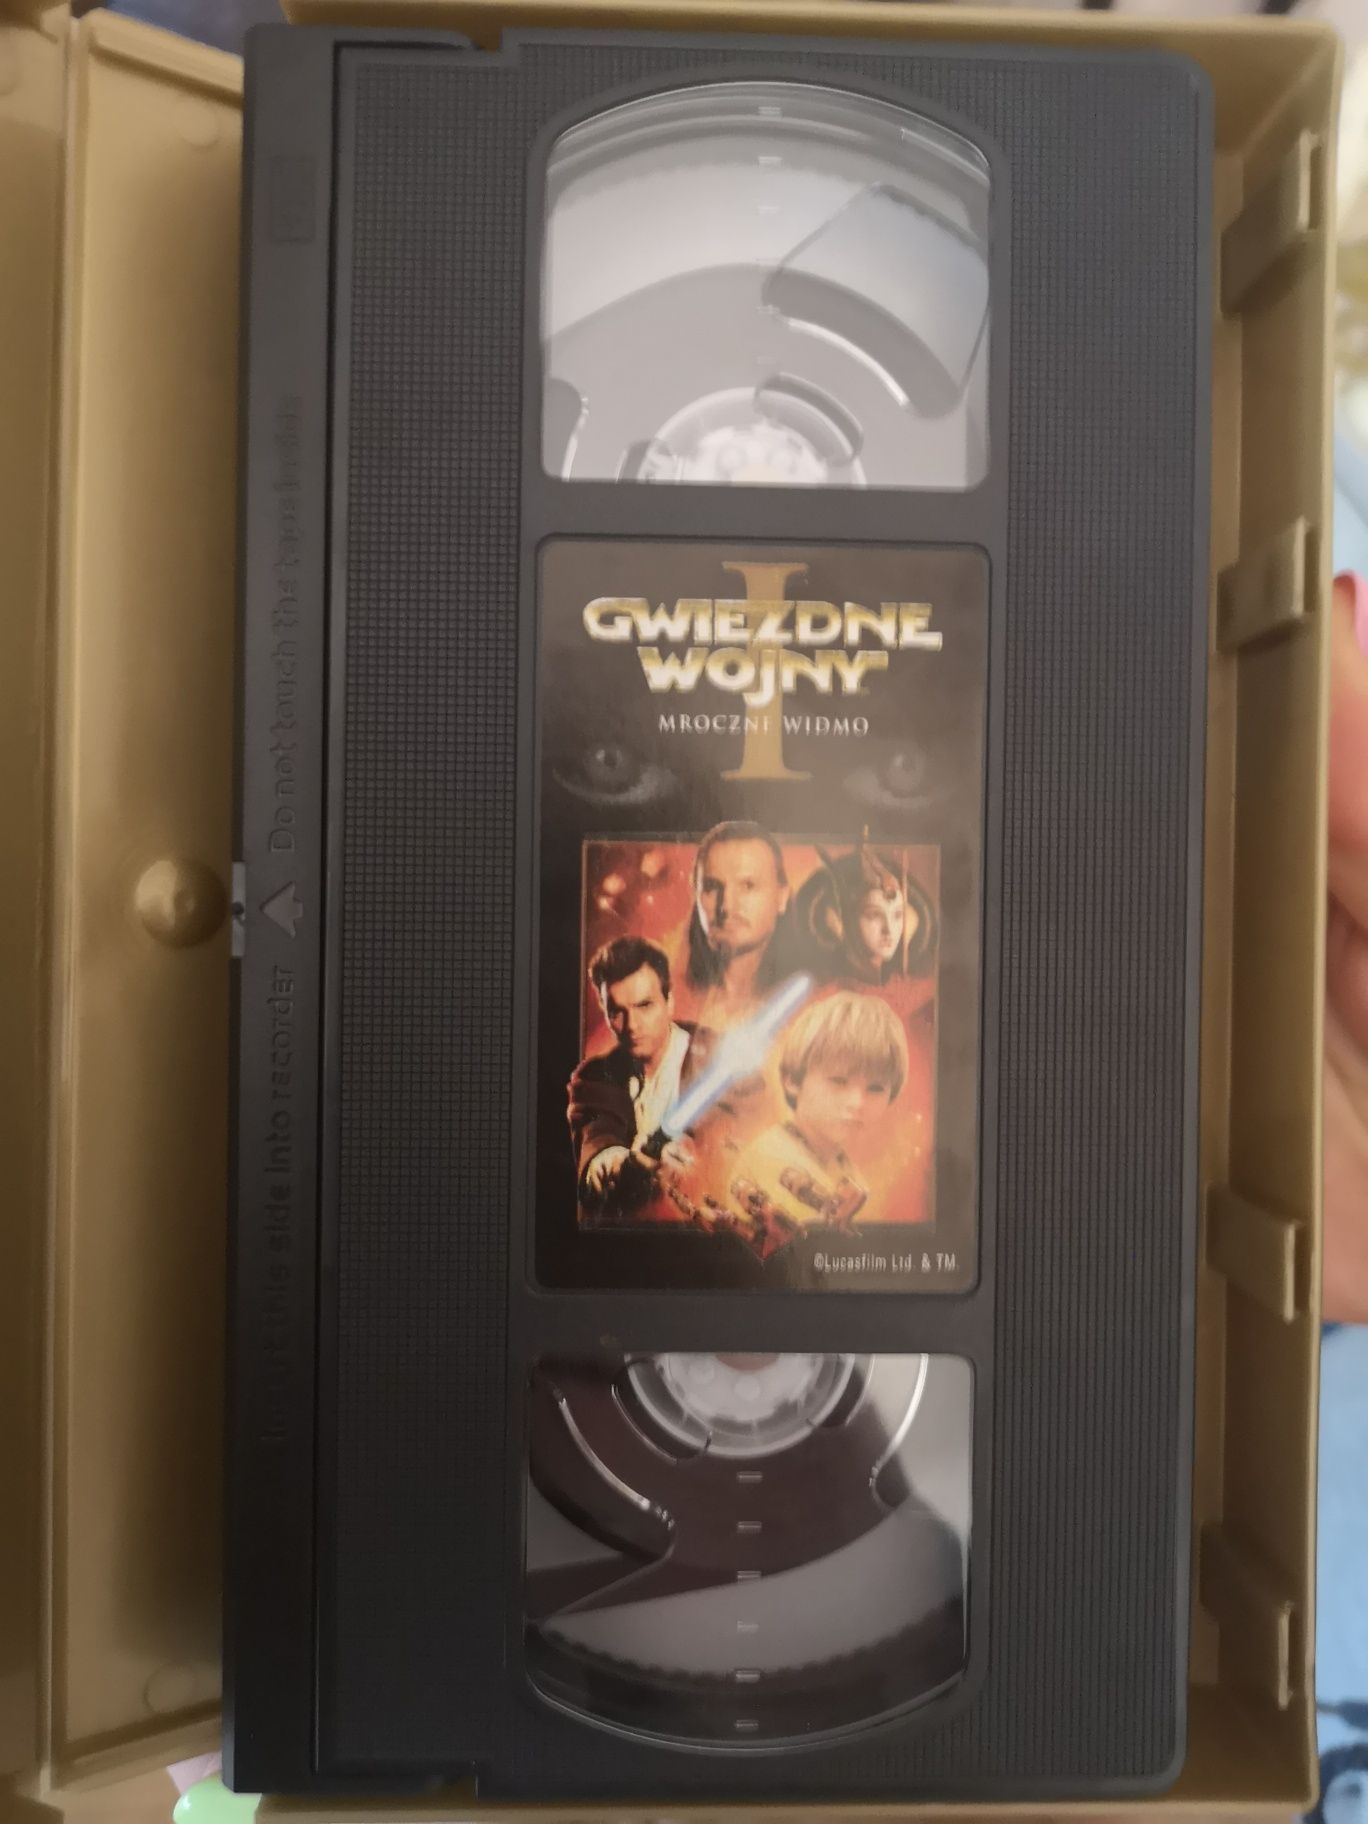 Gwiezdne wojny mroczne widmo VHS